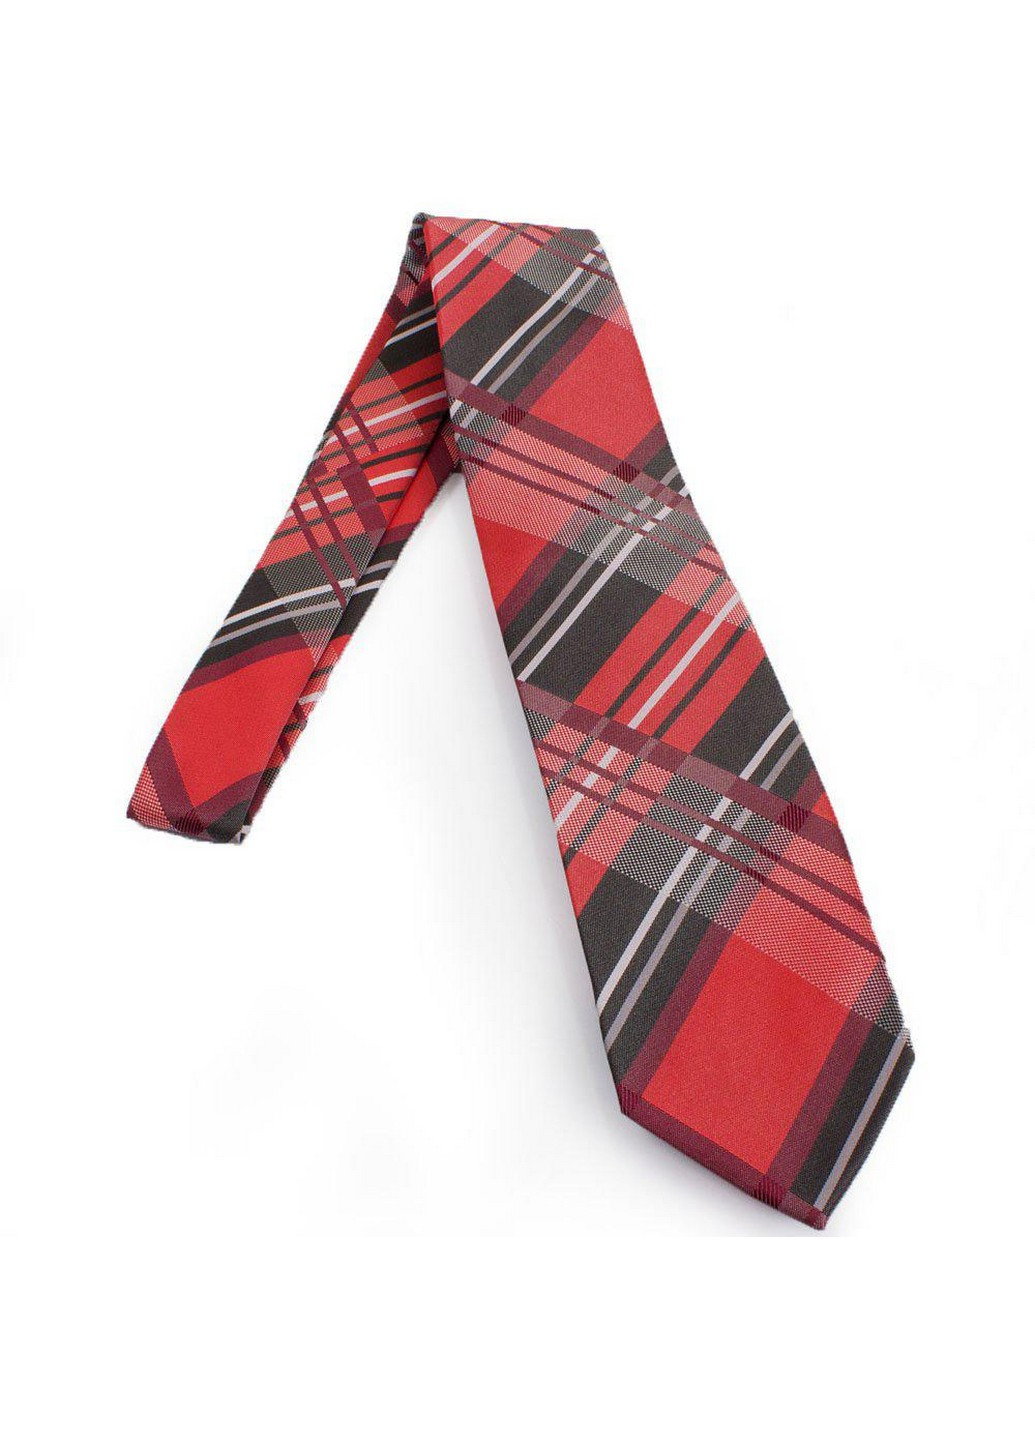 Краватка чоловіча 148,5 см Schonau & Houcken (206672745)